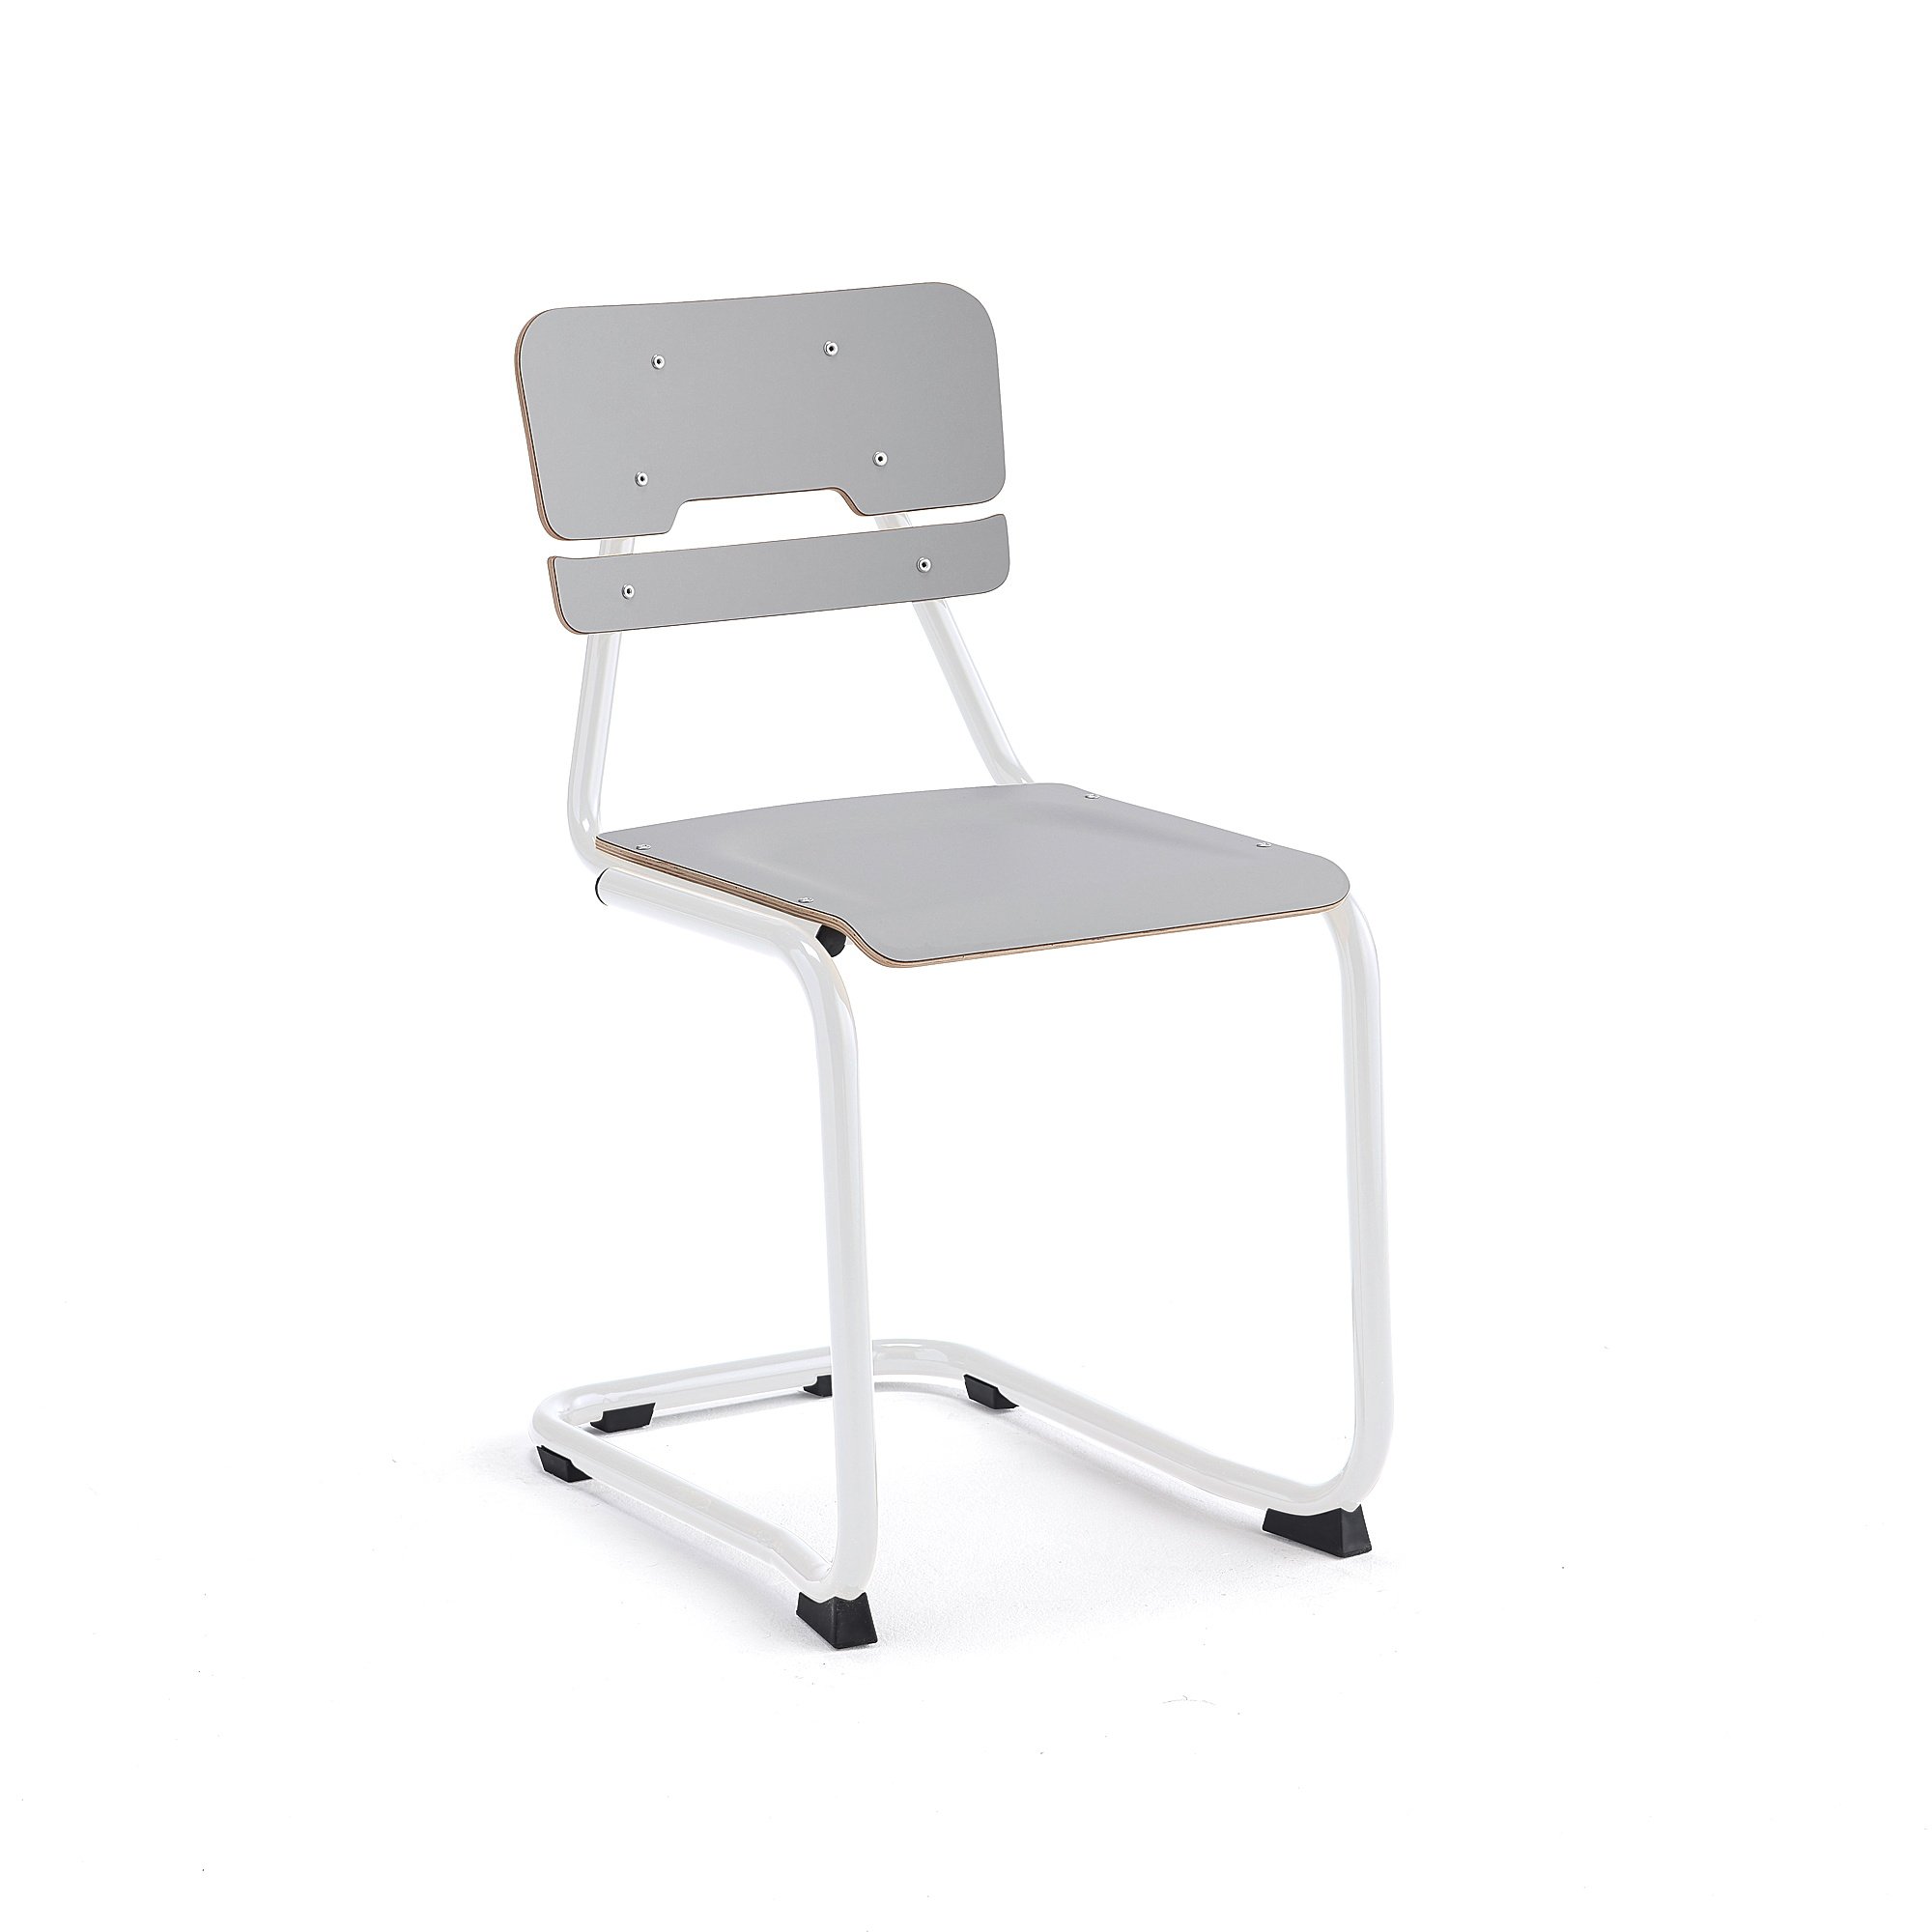 Školní židle LEGERE I, výška 450 mm, bílá, šedá